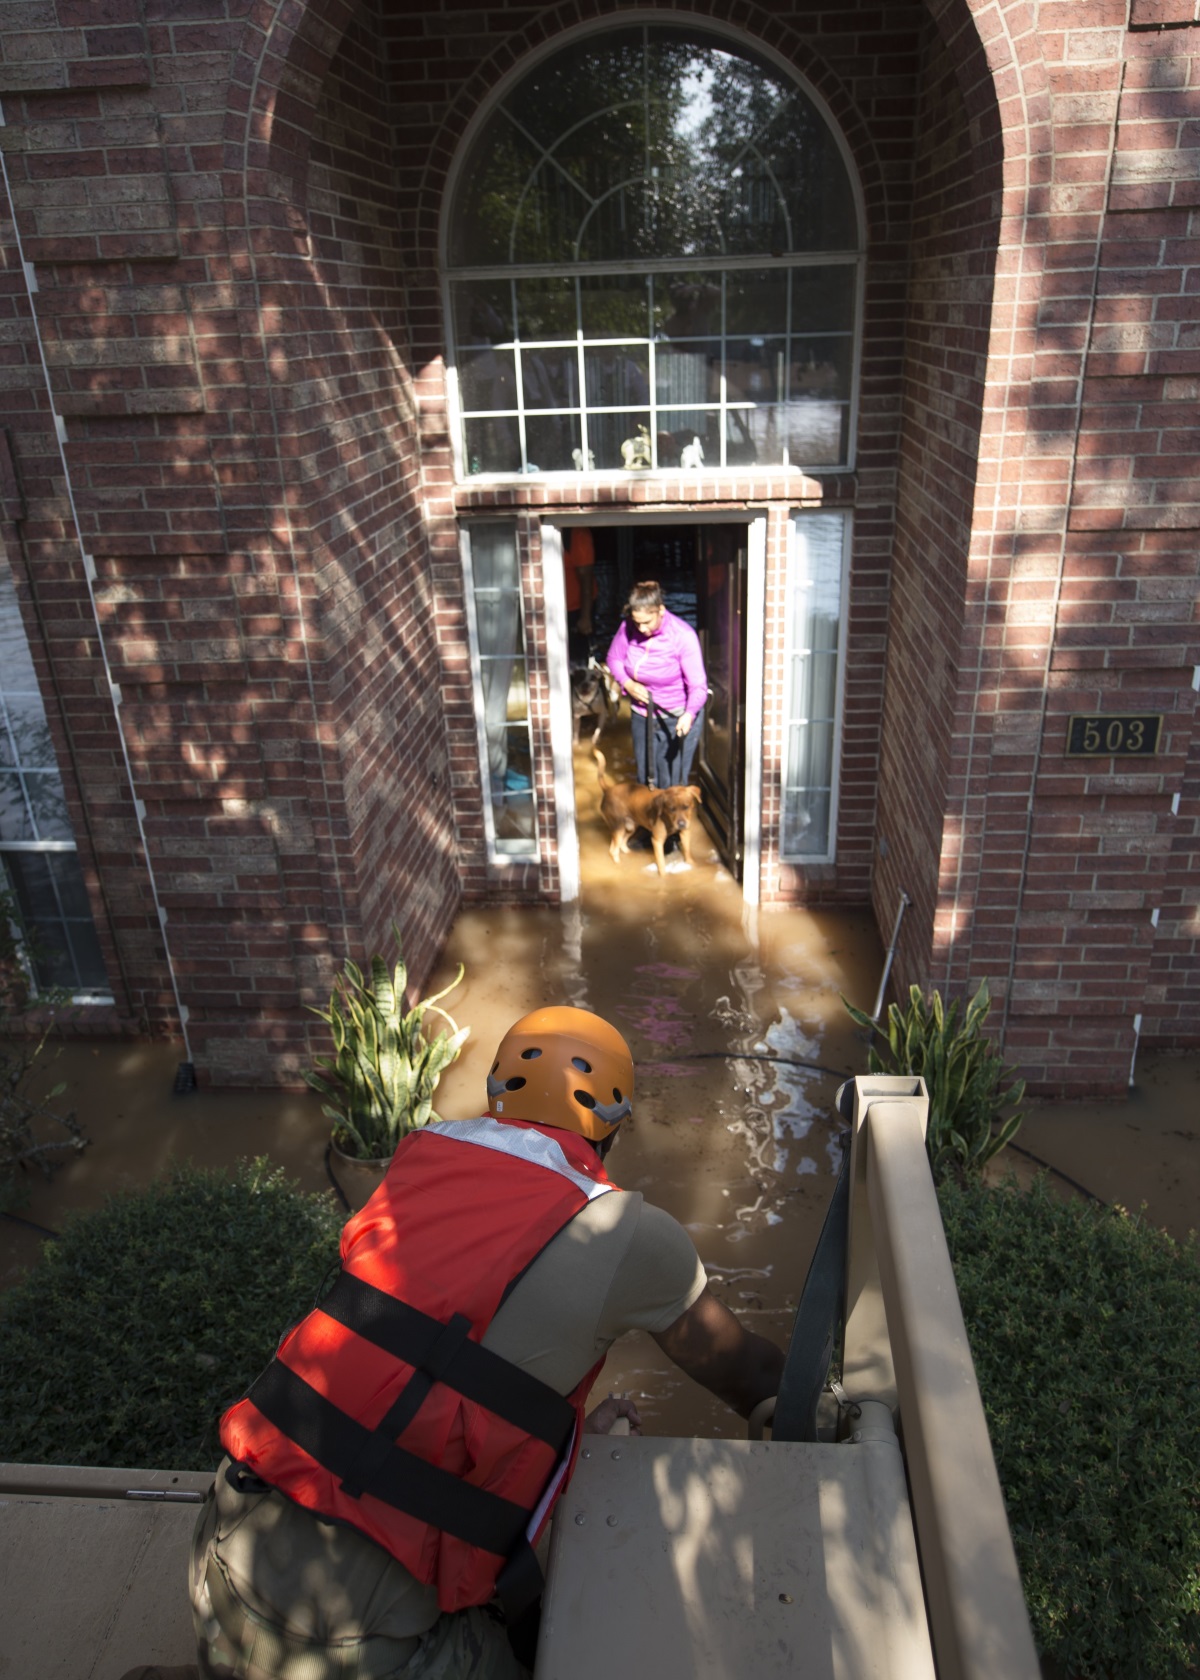 Ураганът Харви заля Тексас с поройни валежи. До момента официално са потвърдени 33 смъртни случая, като се очаква броят им да нарасне. Американският президентът Доналд Тръмп поиска от Конгреса близо 8 млрд. долара за справяне с последиците от урагана.